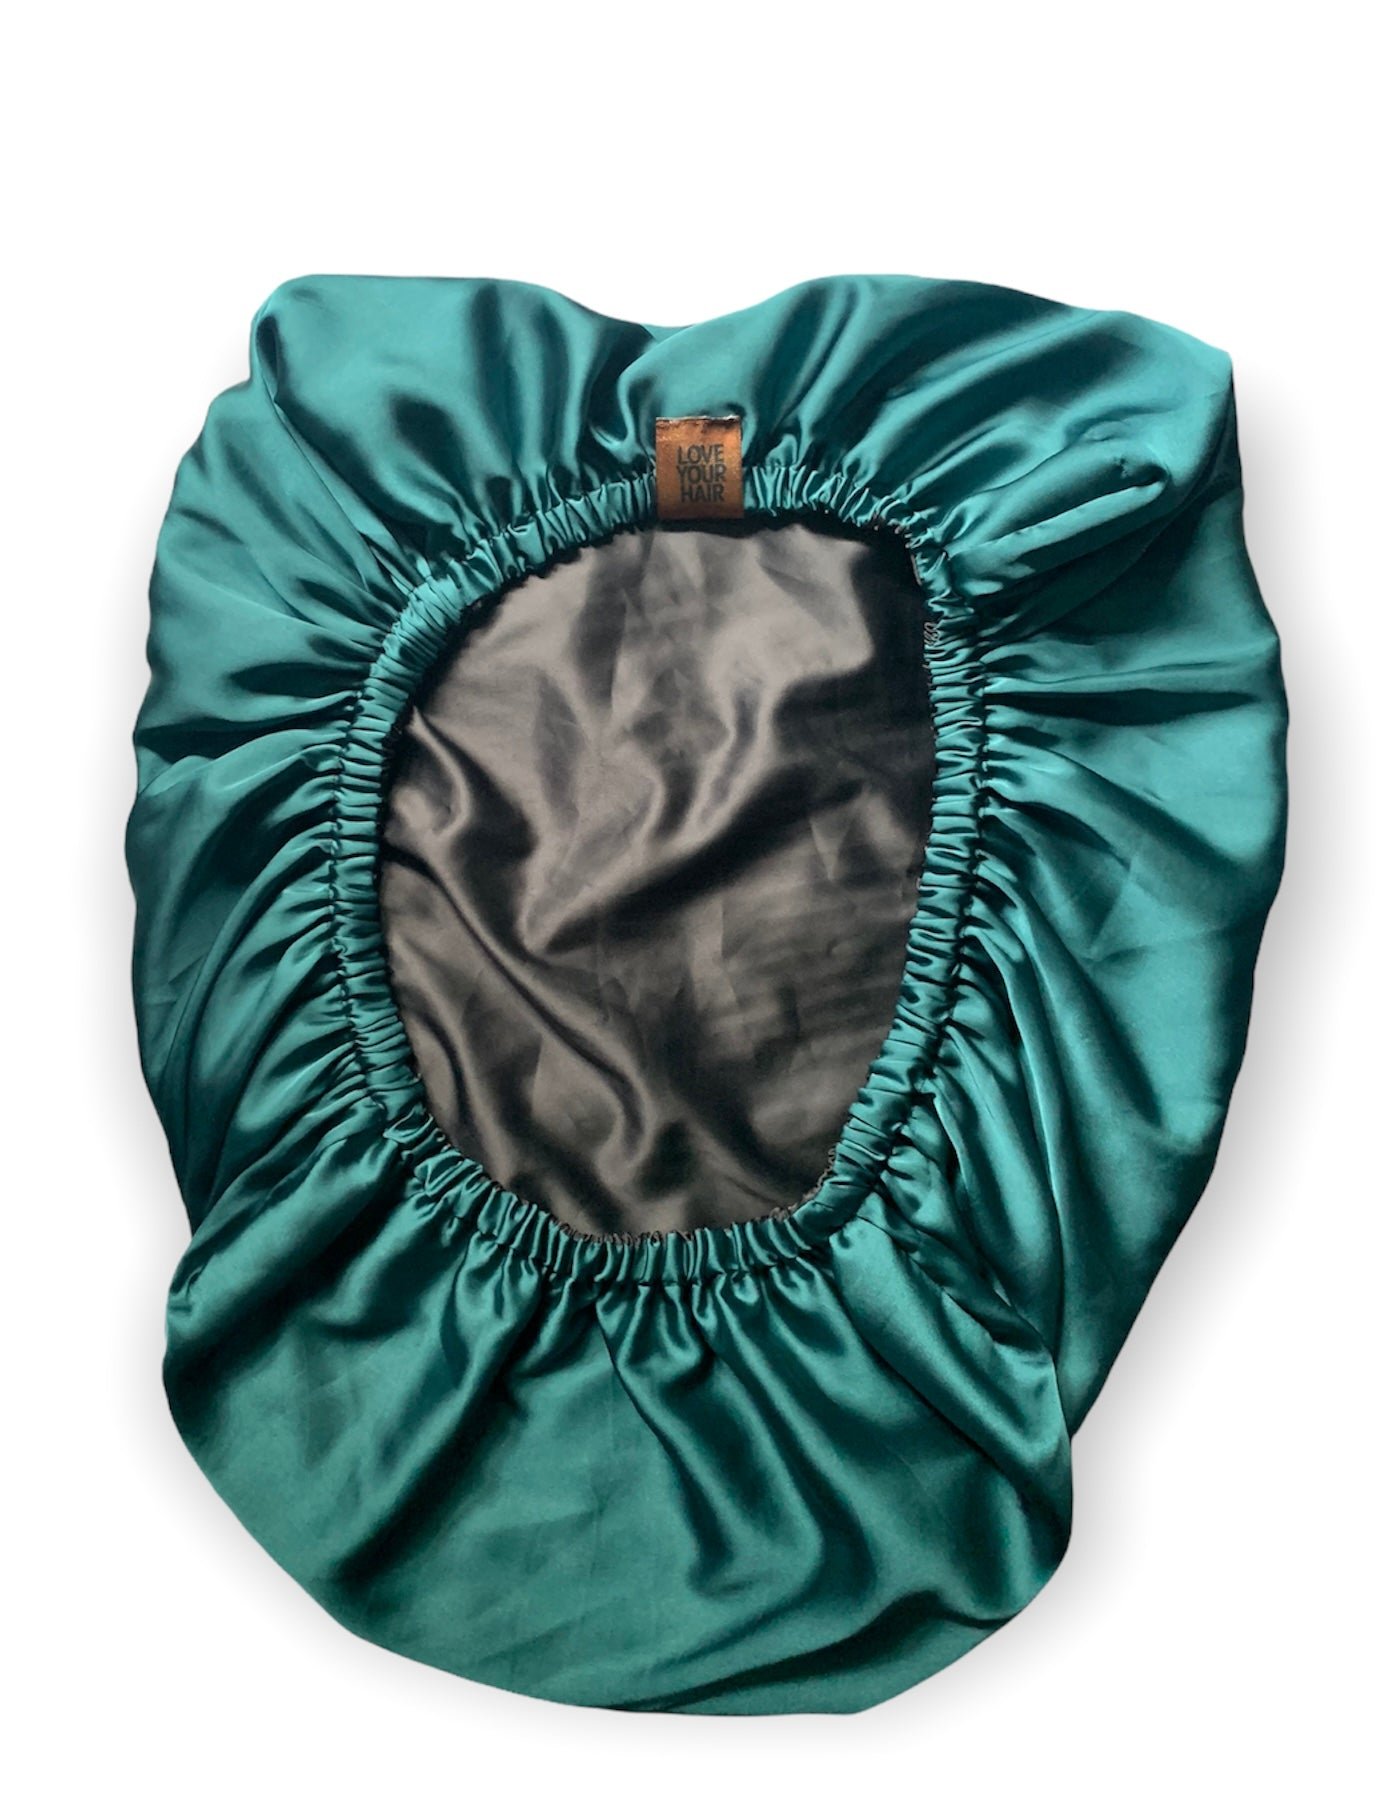 Satin Bonnet Pillowcase